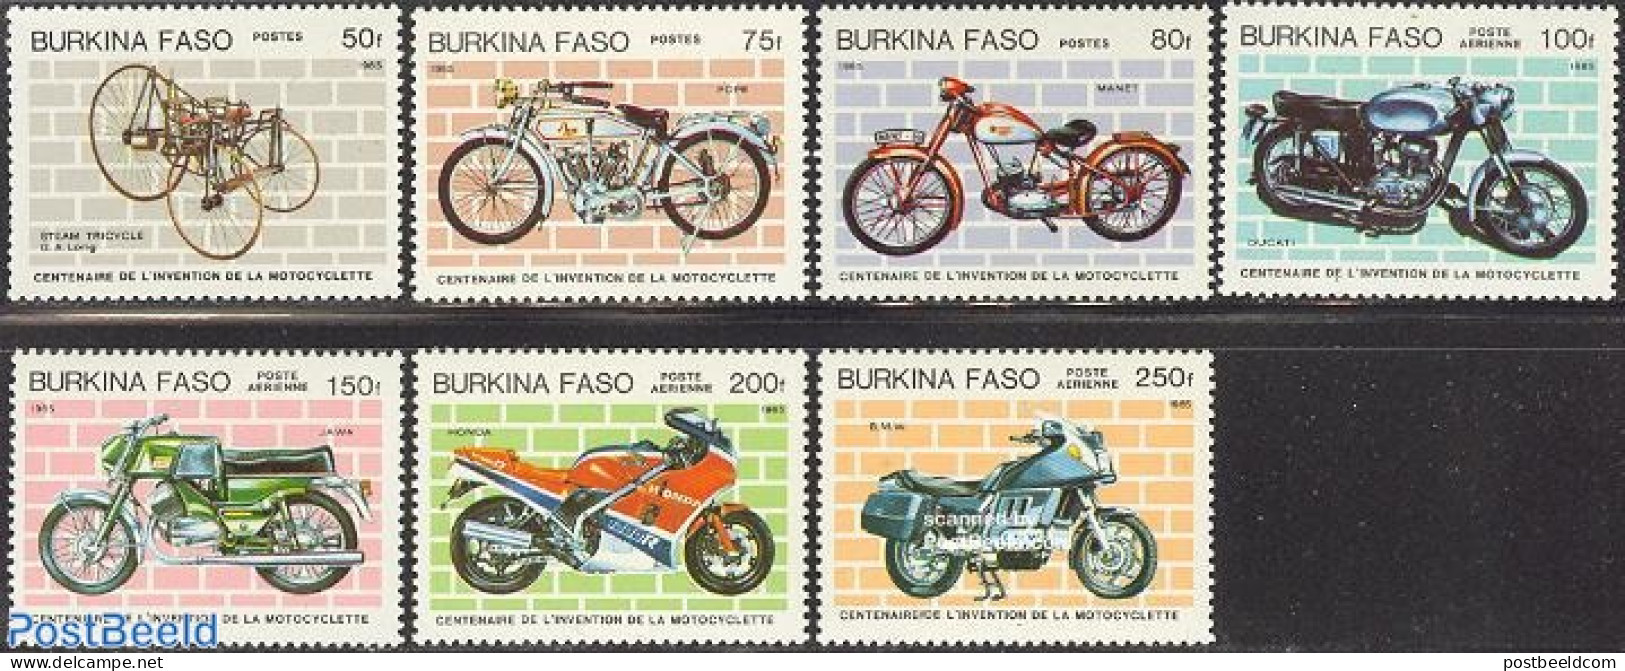 Burkina Faso 1985 Motorcycle Centenary 7v, Mint NH, Transport - Motorcycles - Moto